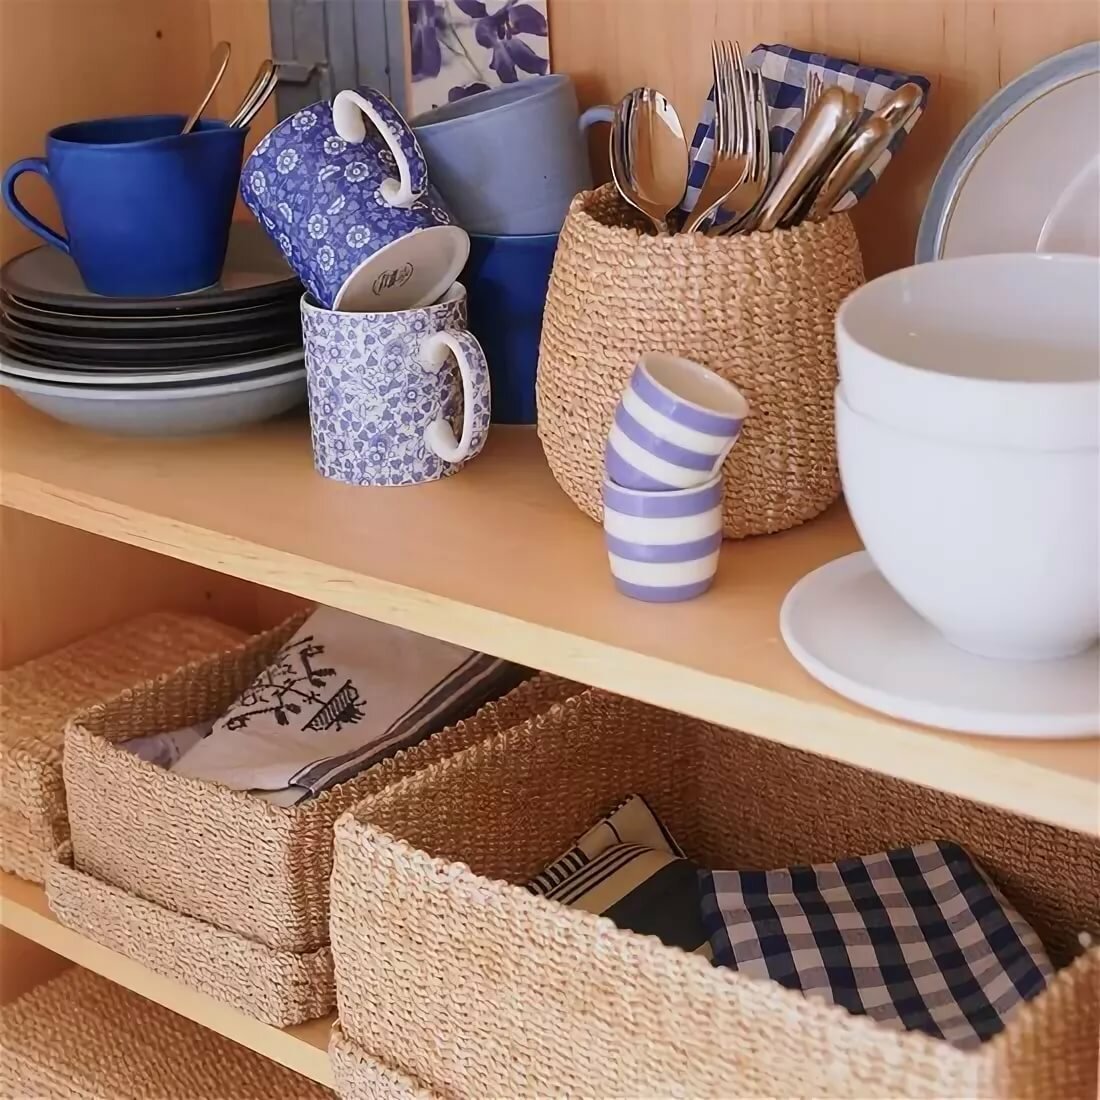 Разные полезные вещи. Плетеные корзины на кухне. Удобные мелочи для кухни. Вещи для уюта в доме. Плетеные вещи в интерьере.